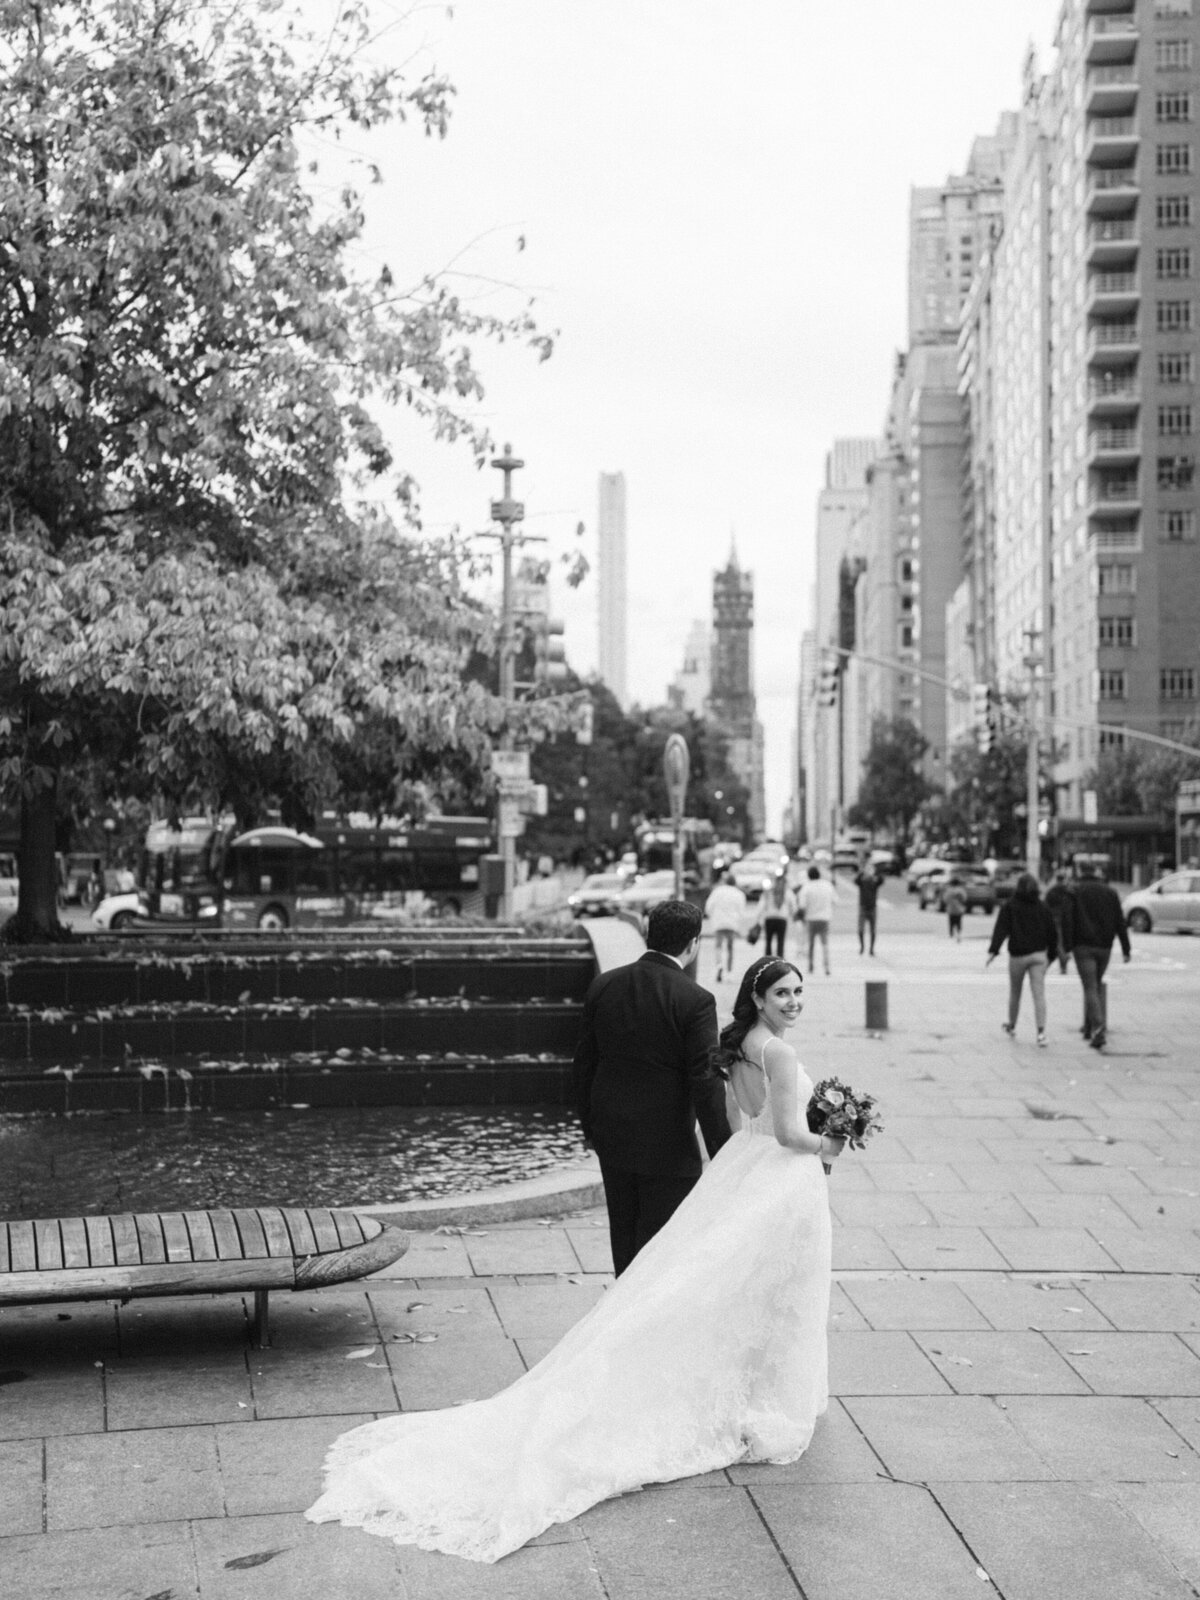 mandarinorientalwedding-newyorkwedding-nycwedding-luxurywedding-felixfeyginphotography-014